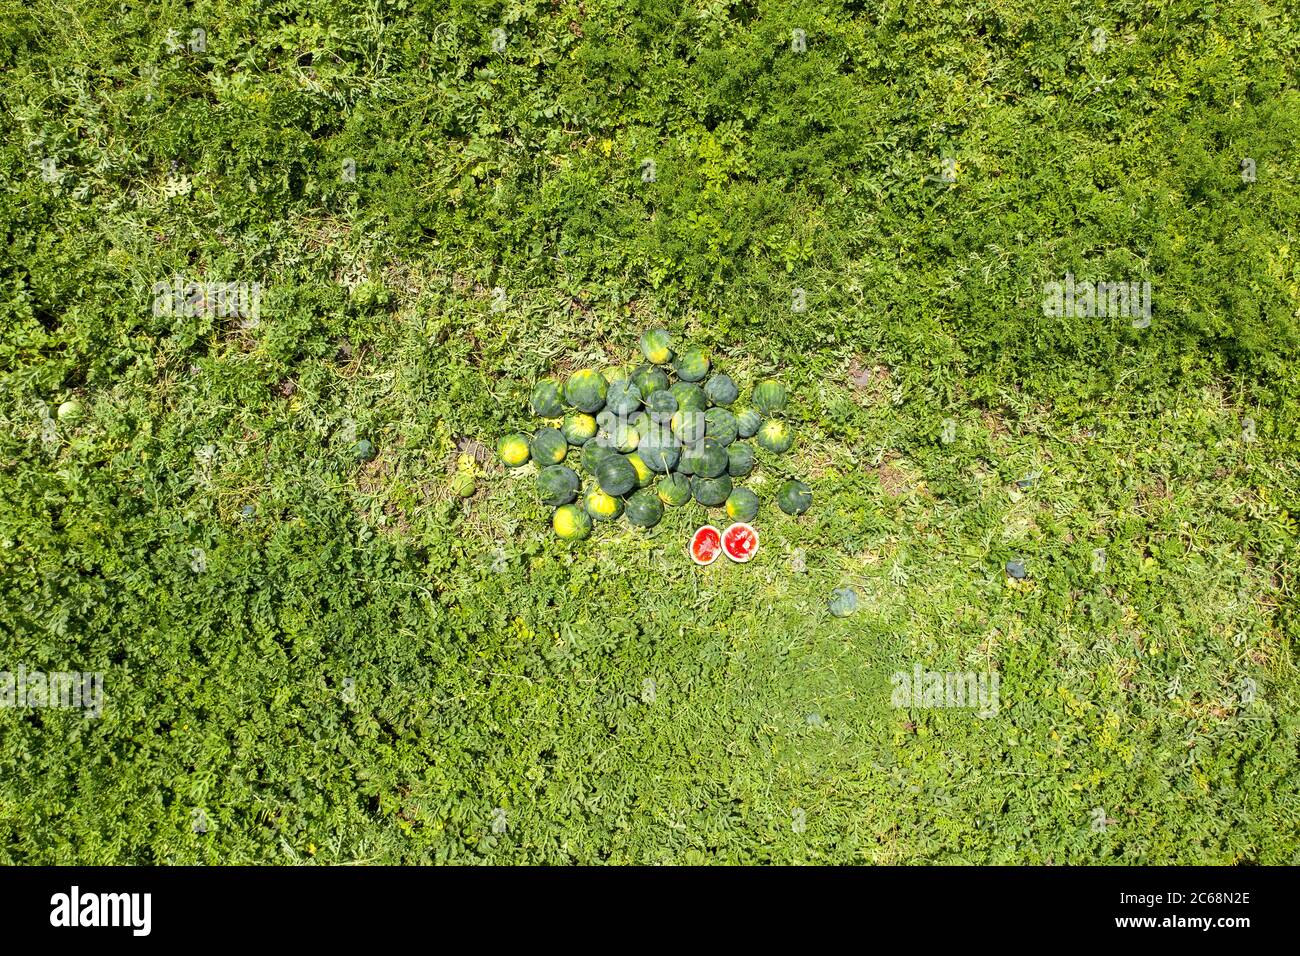 Gruppo di filigrane mature in un campo, immagine aerea. Foto Stock